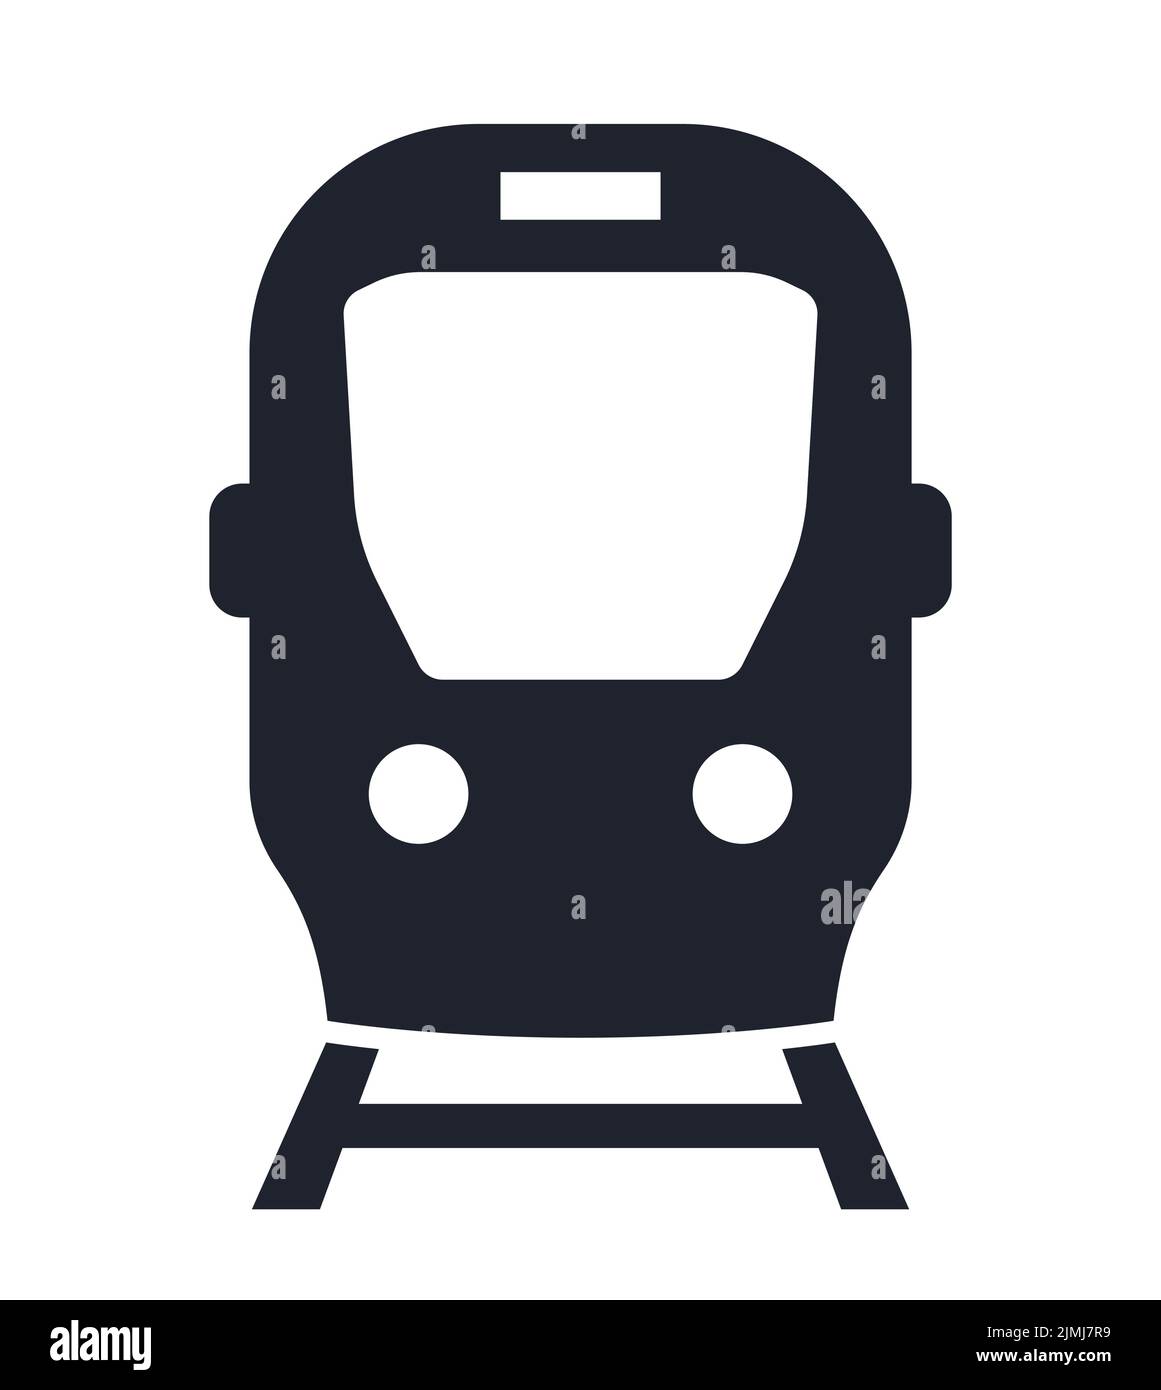 Tranvía metro tranvía icono de tranvía vector Ilustración del Vector